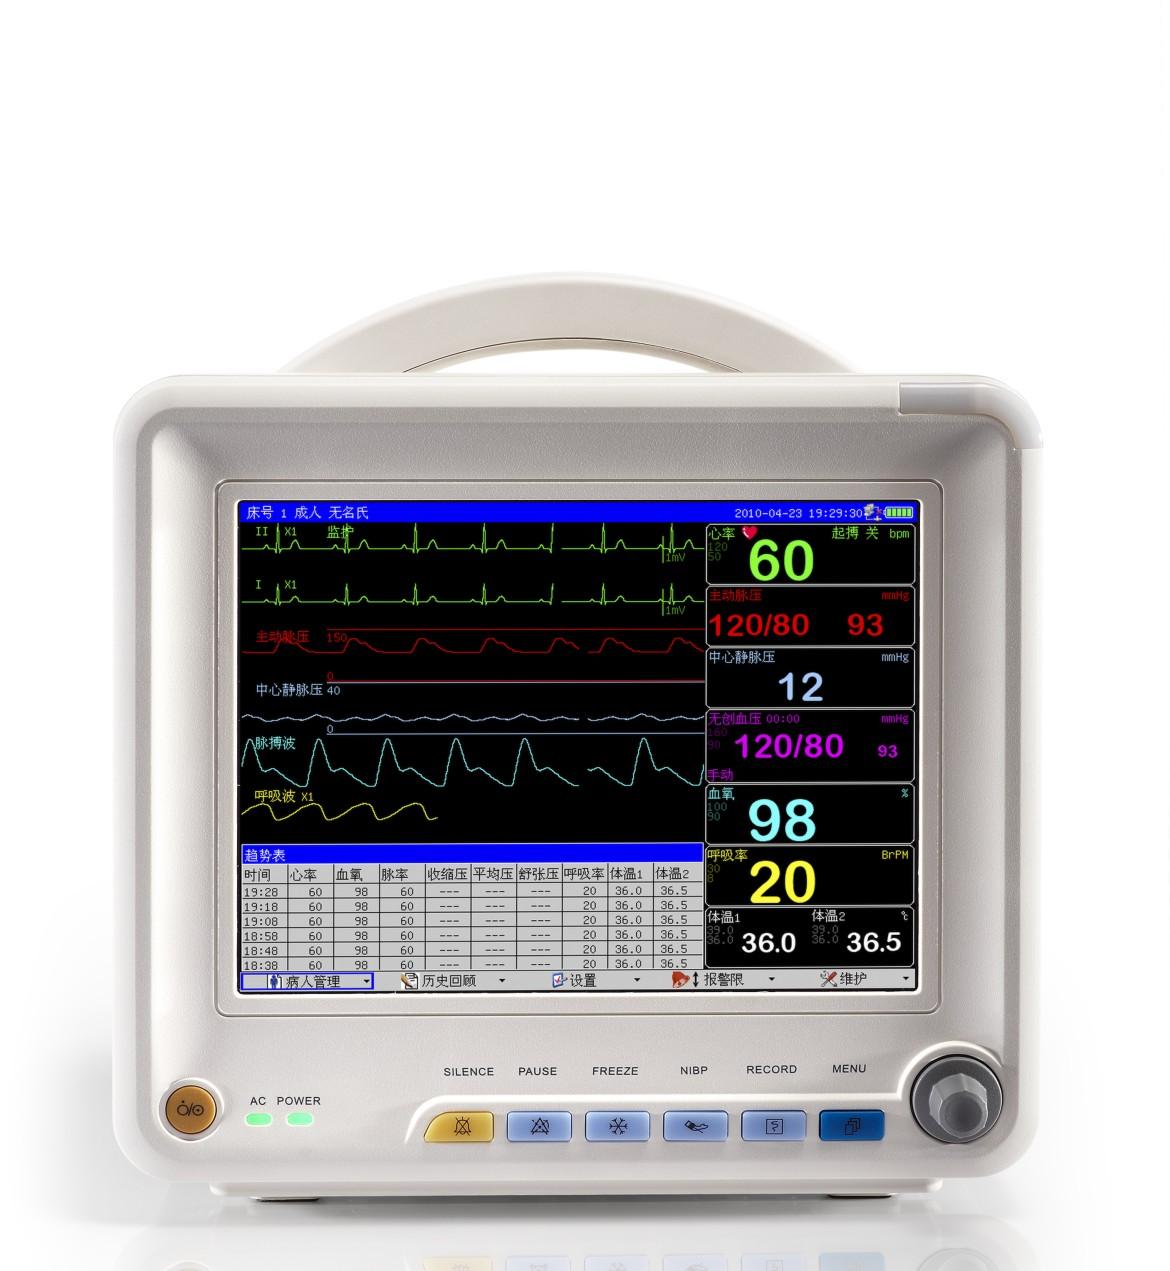 DK-8000L portable patient monitor